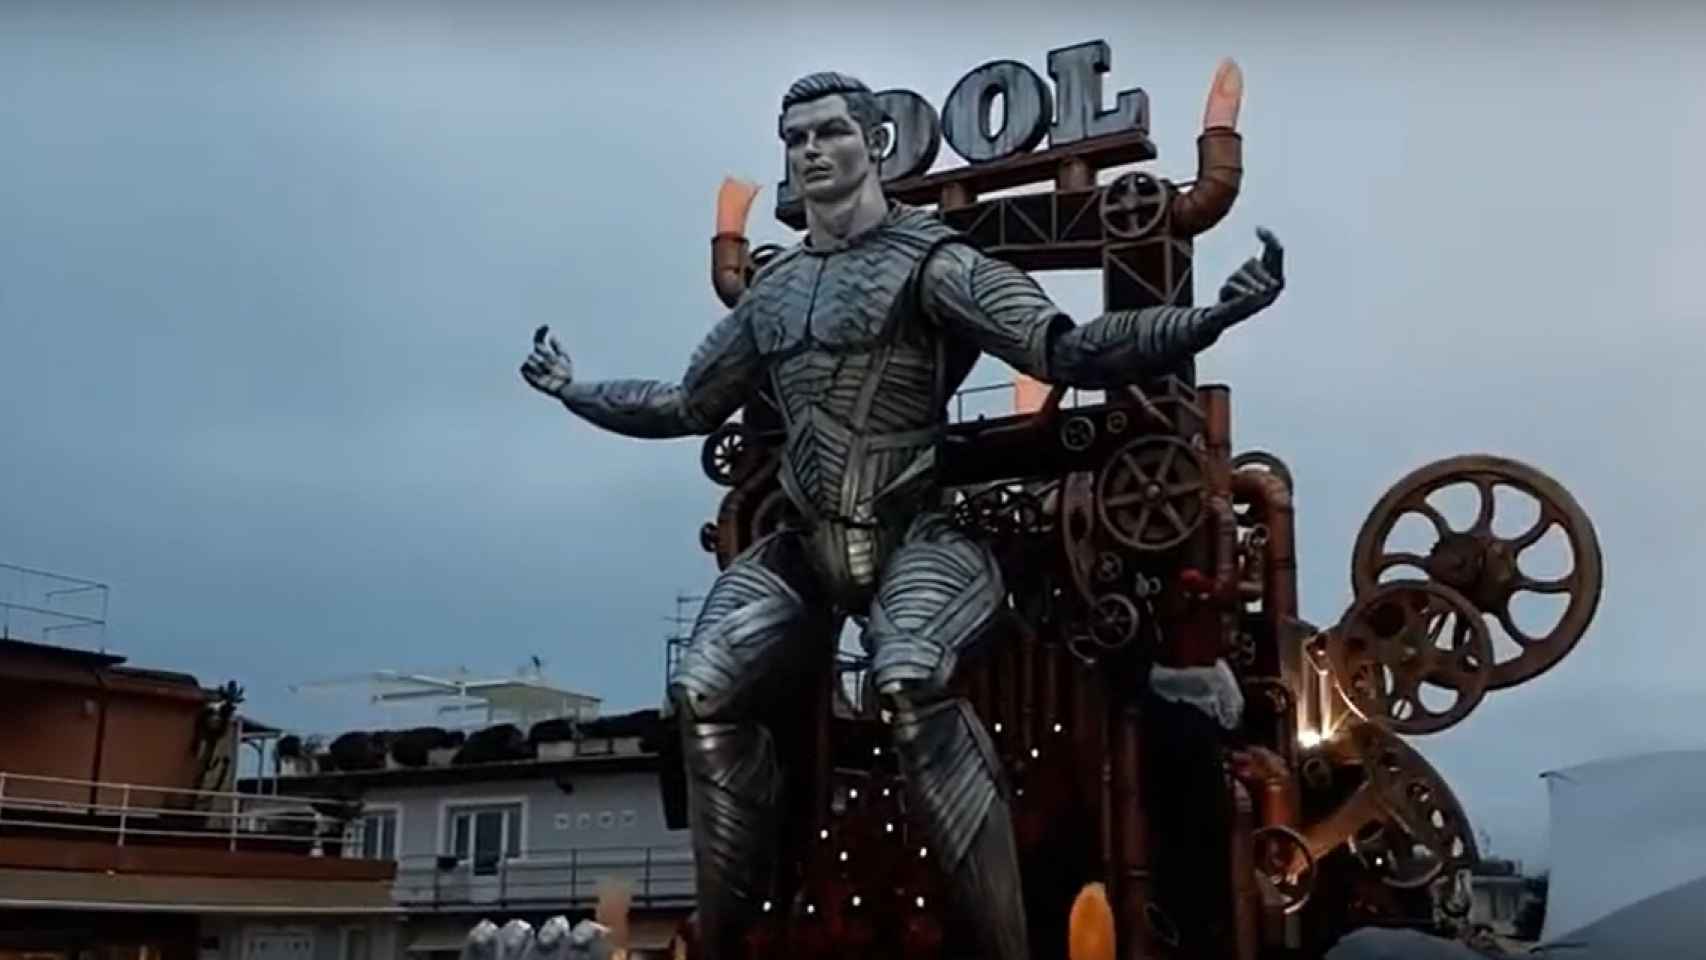 Un Cristiano Ronaldo de 20 metros para dar la bienvenida al Carnaval de Italia